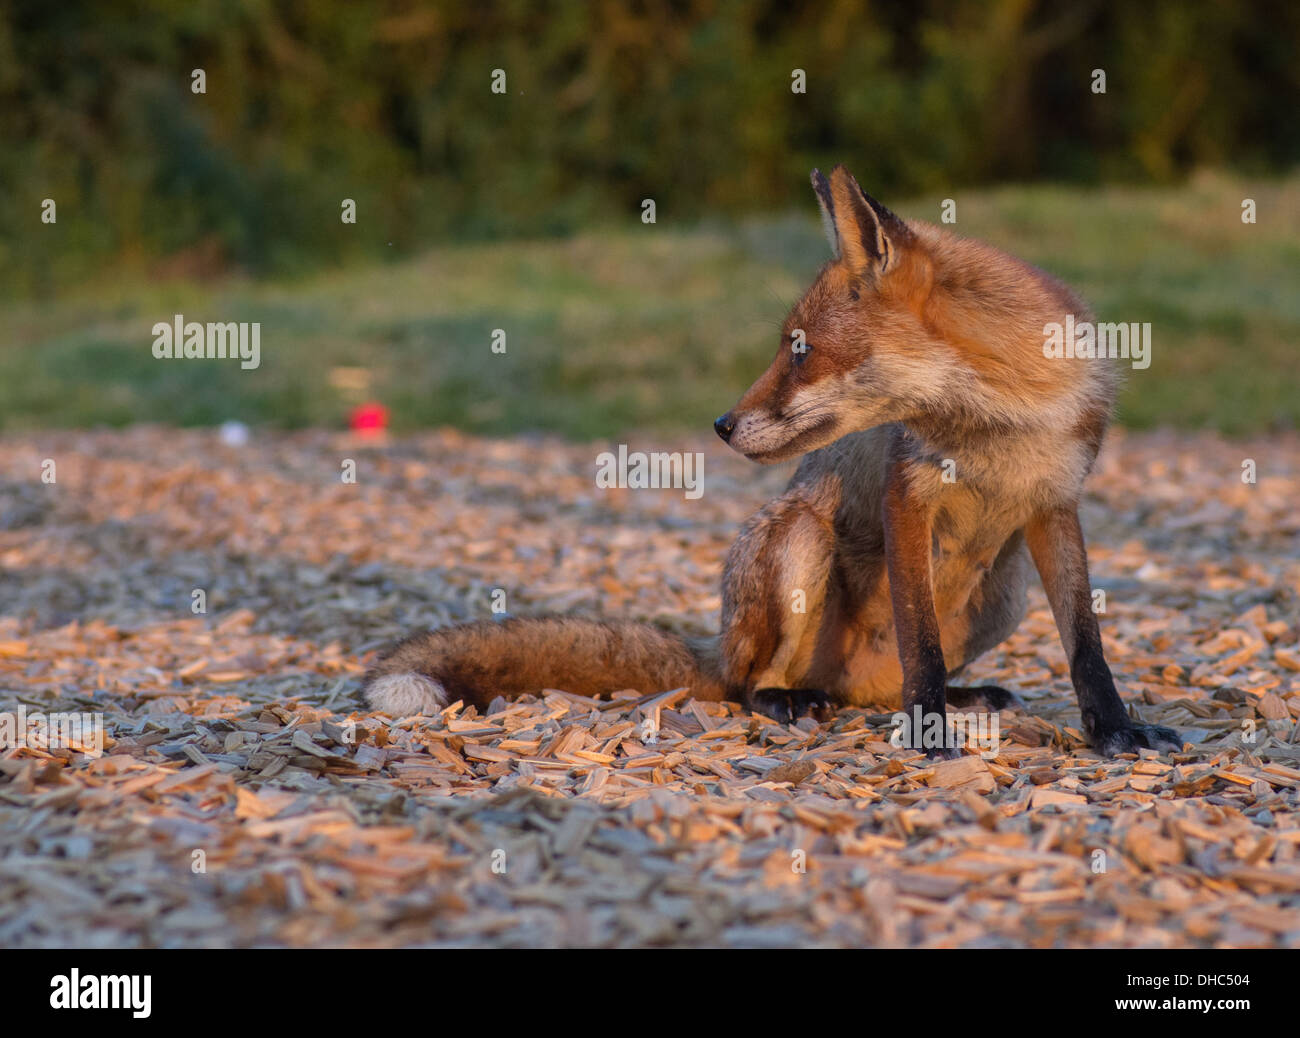 Una hembra fox (Vixen) tras asaltar un depósito de desechos de alimentos Foto de stock